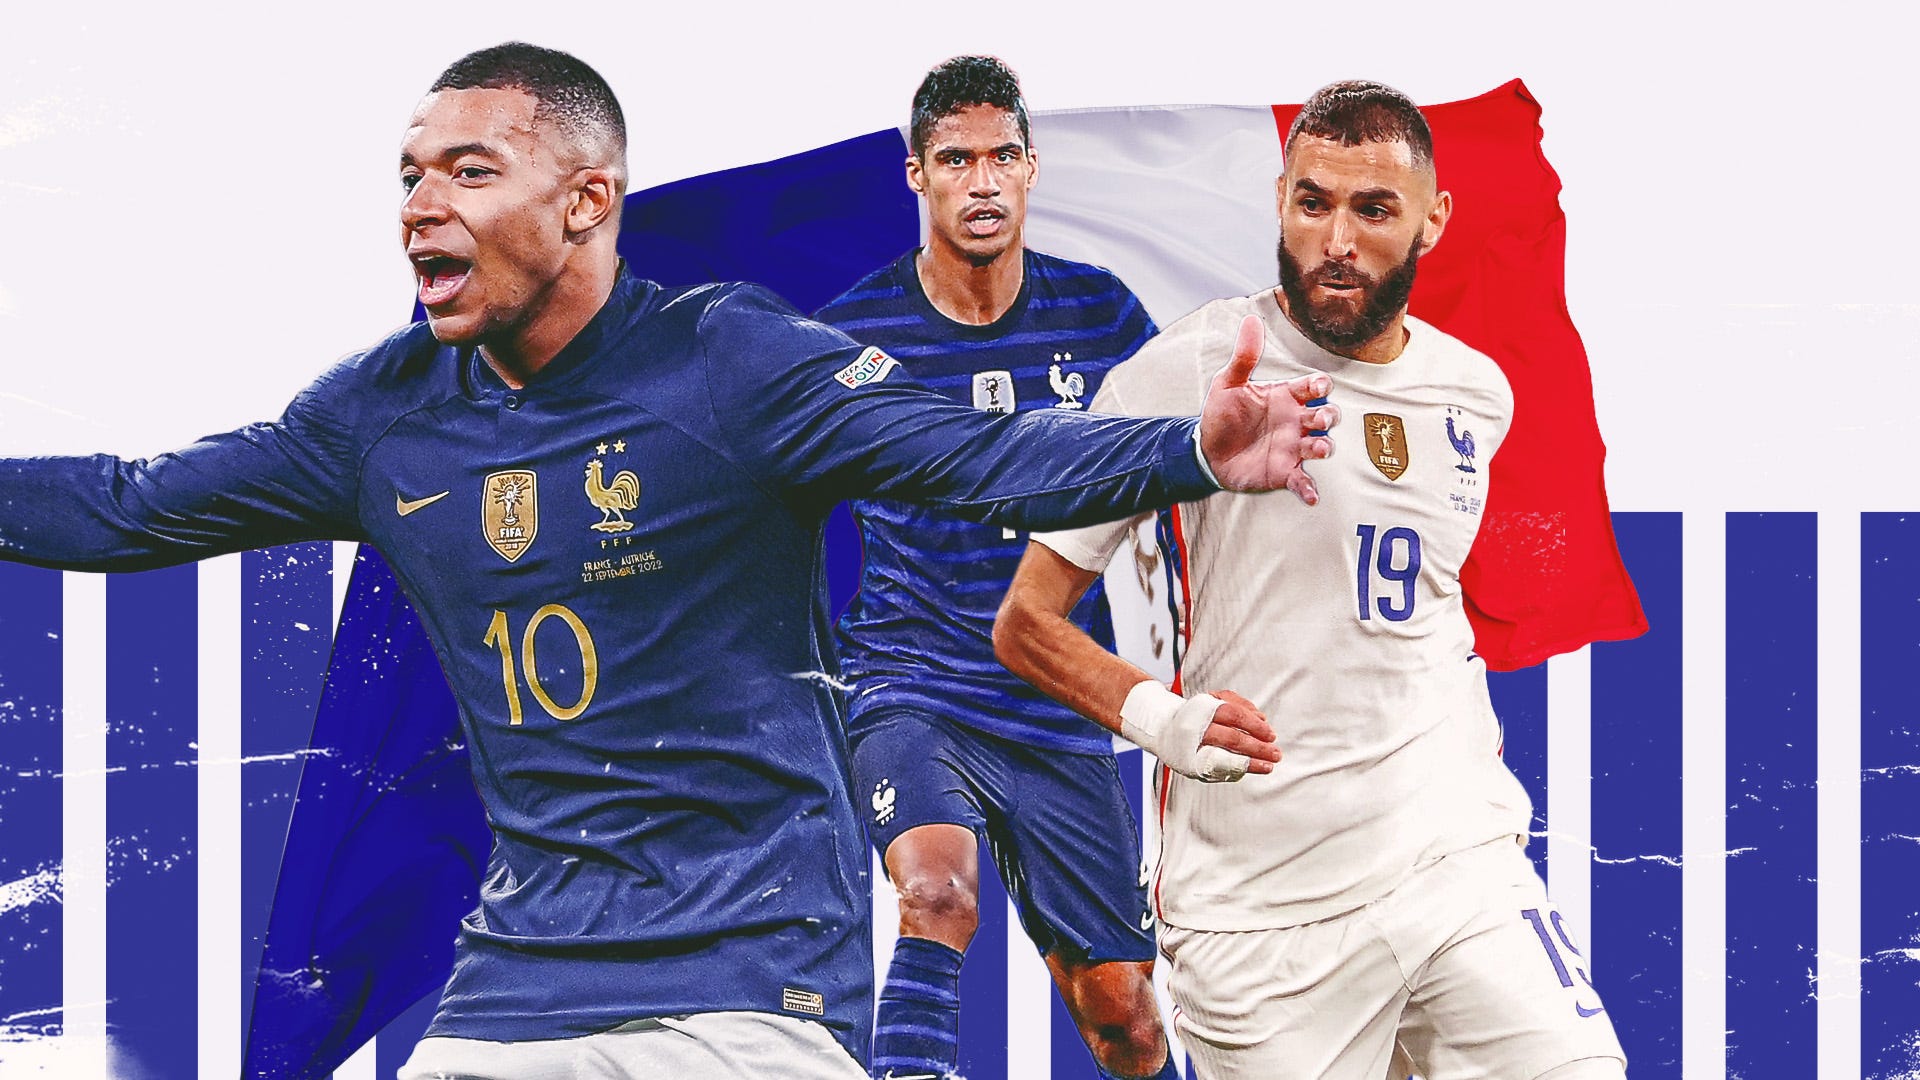 Danh sách cầu thủ của đội tuyển quốc gia Pháp dự World Cup 2022 có bao nhiêu người?
